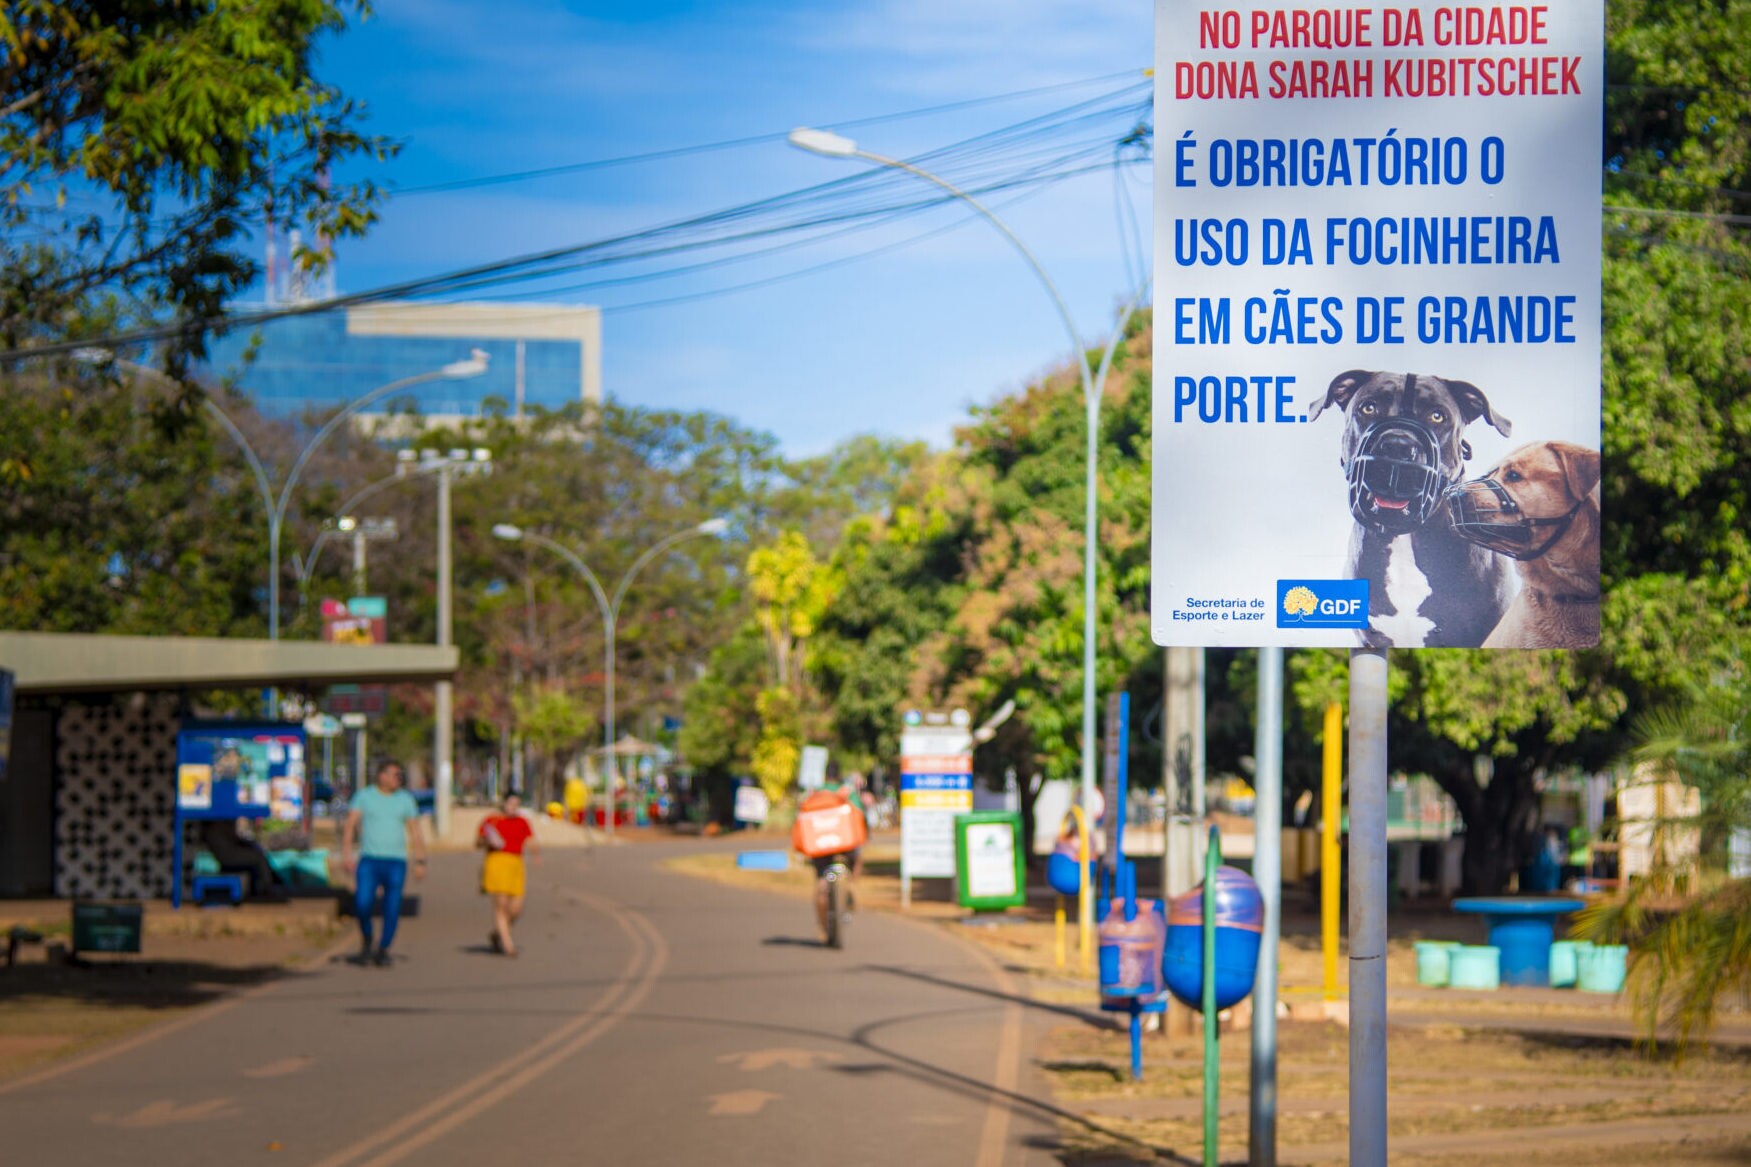 Placas instaladas no Parque da Cidade alertam para uso de equipamentos de segurança em animais que circulam no local | Foto: Divulgação/SEL